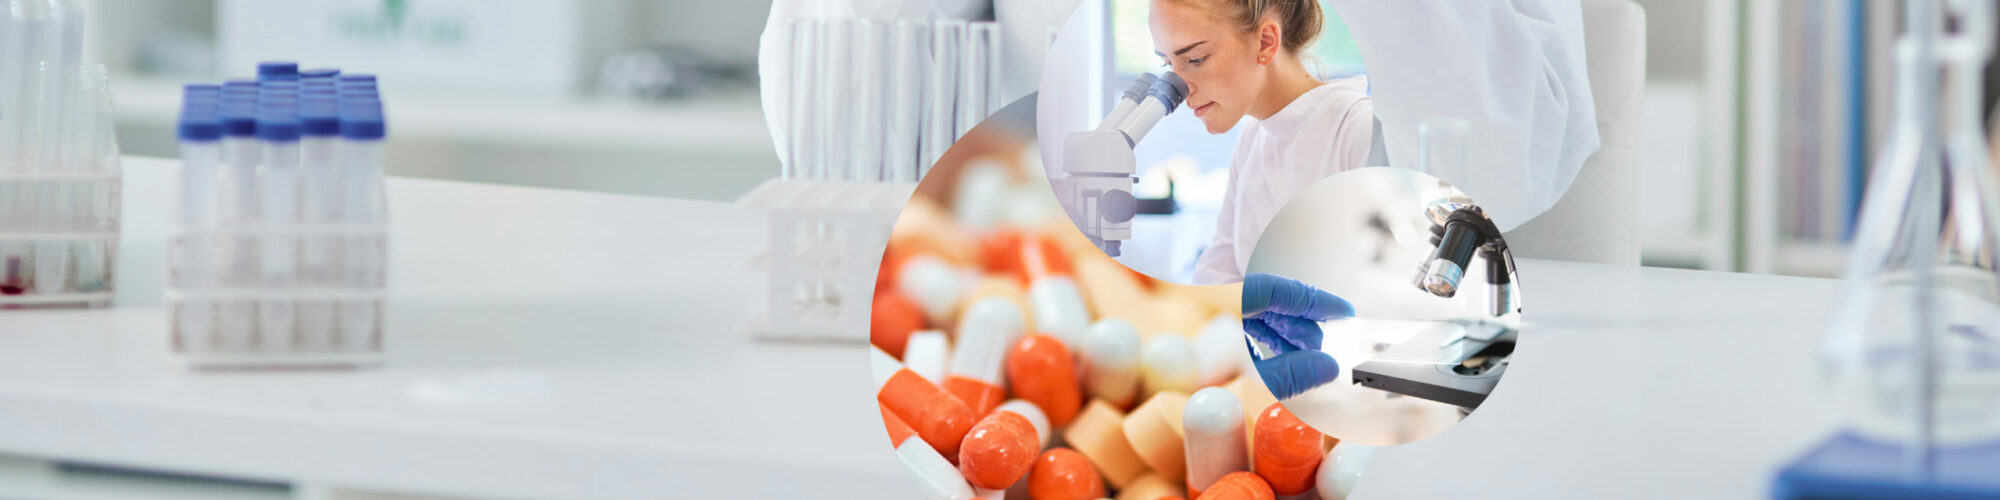 Bild einer Frau im Kittel, die durch ein Mikroskop schaut, daneben die Nahaufnahme eines Mikroskops sowie von Tabletten und Pillen, im Hintergrund ein Labor, valantic chemische und pharmazeutische Industrie